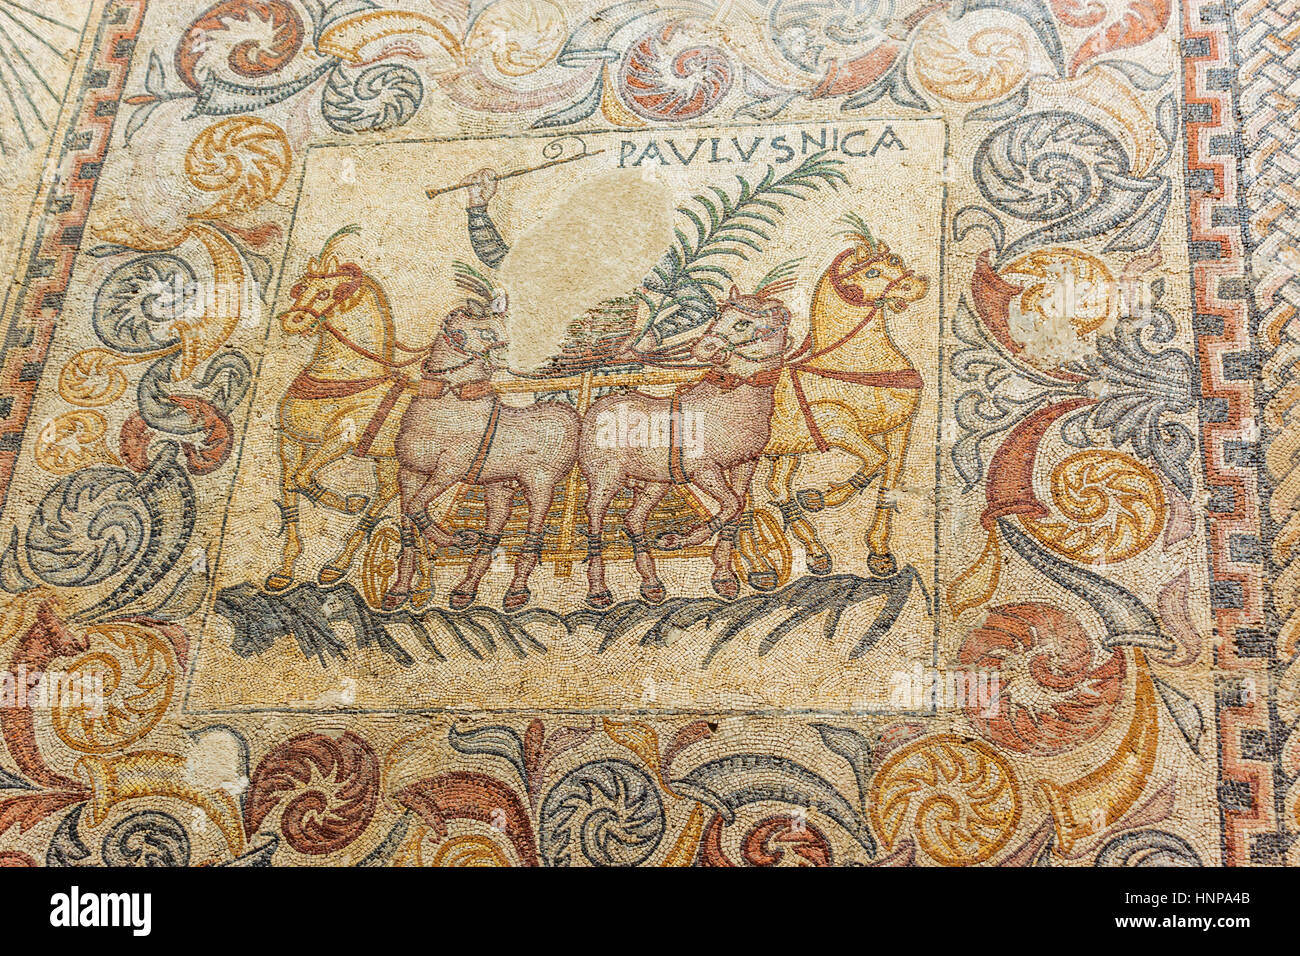 Merida, Provinz Badajoz, Extremadura, Spanien. Darstellung der Wagenlenker vier Fahrpferde Mosaiken.  Museo Nacional de Arte Romano. Nationales Museum von Rom Stockfoto